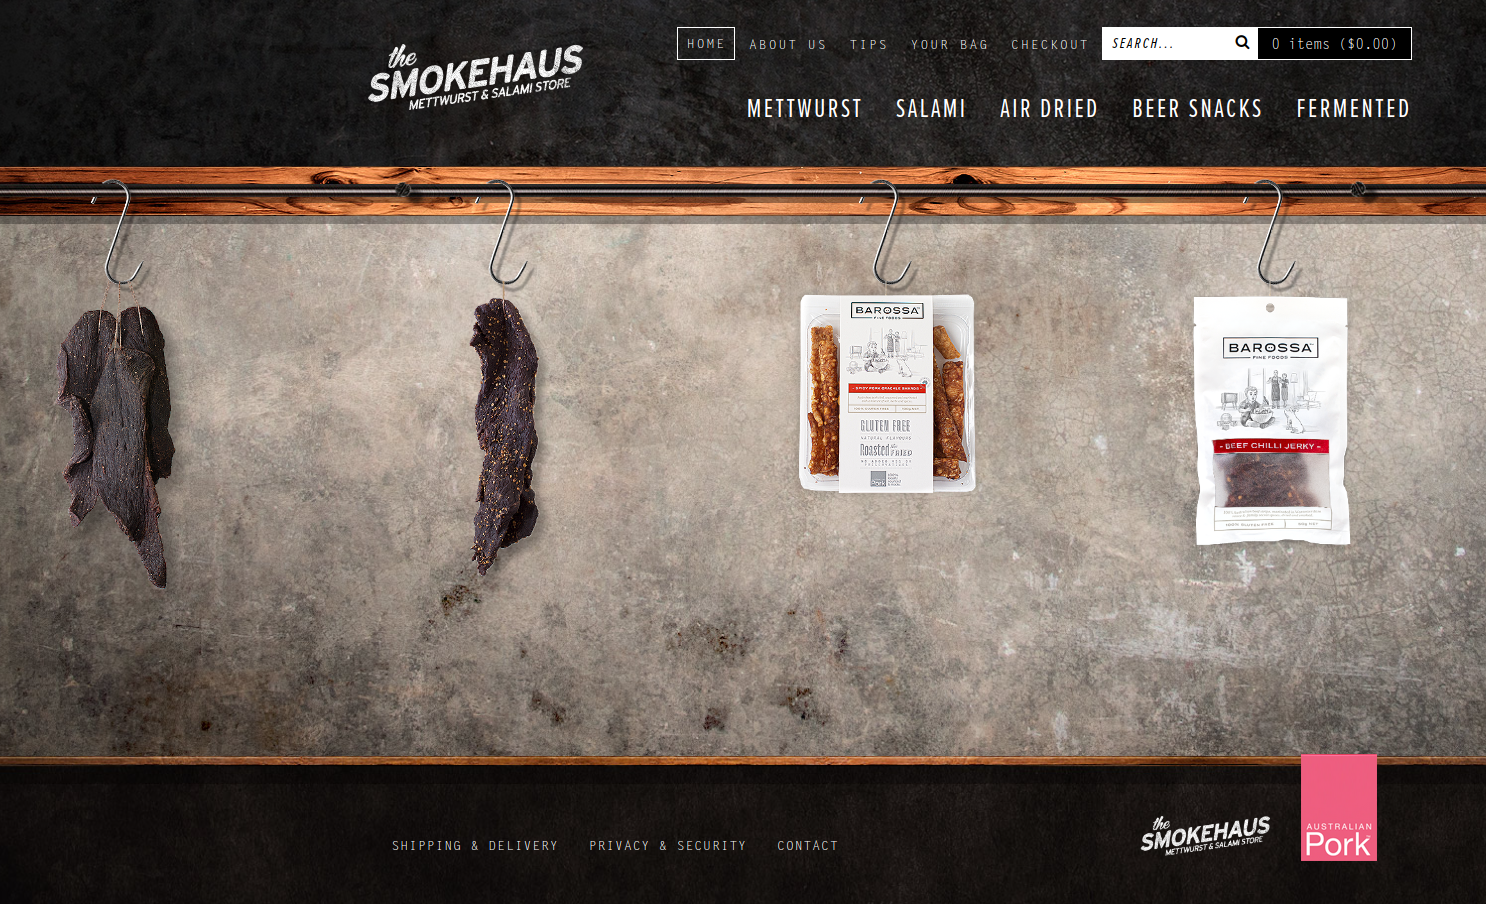 Przeglądanie produktów na stronie e-commerce the Smokehaus przypomina wizytę u rzeźnika